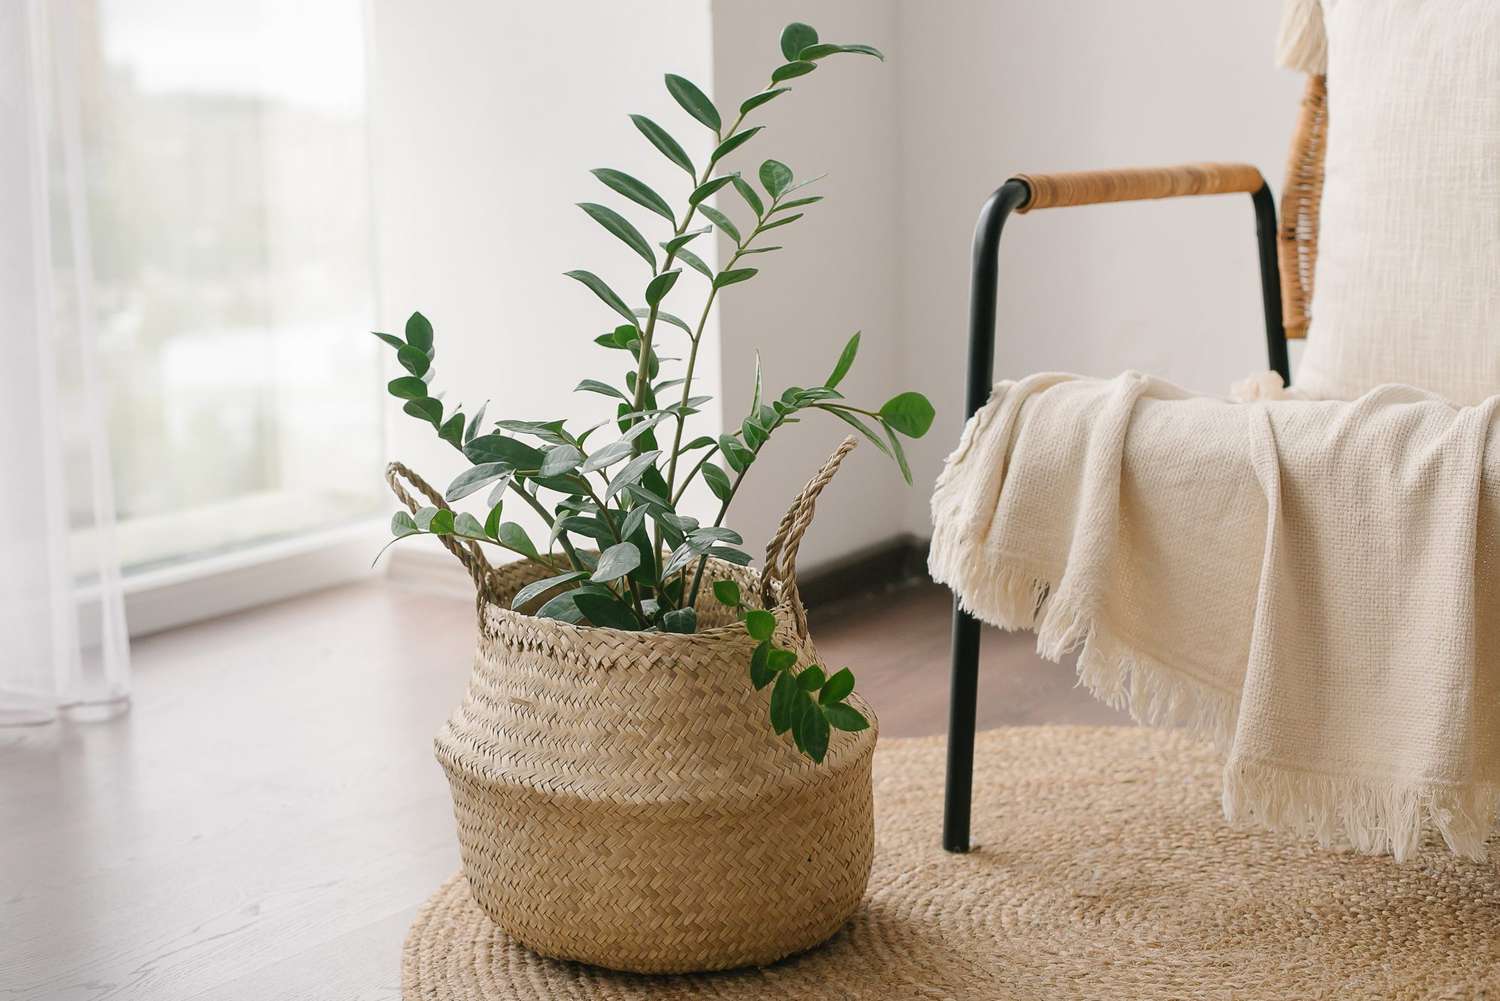 zz plant in beige bedroom